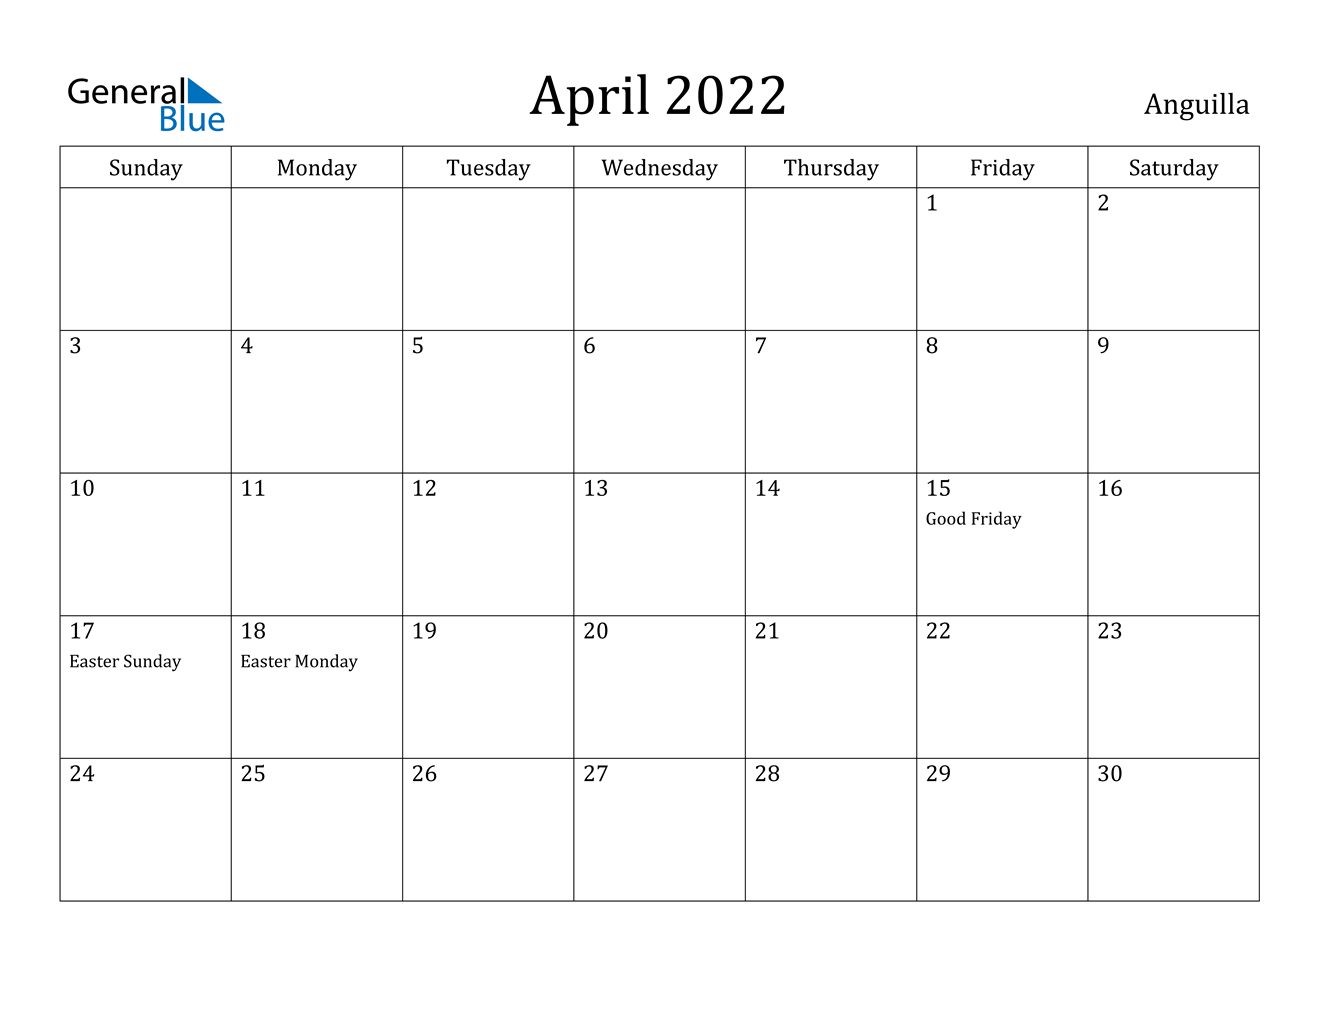 April 2022 Calendar - Anguilla